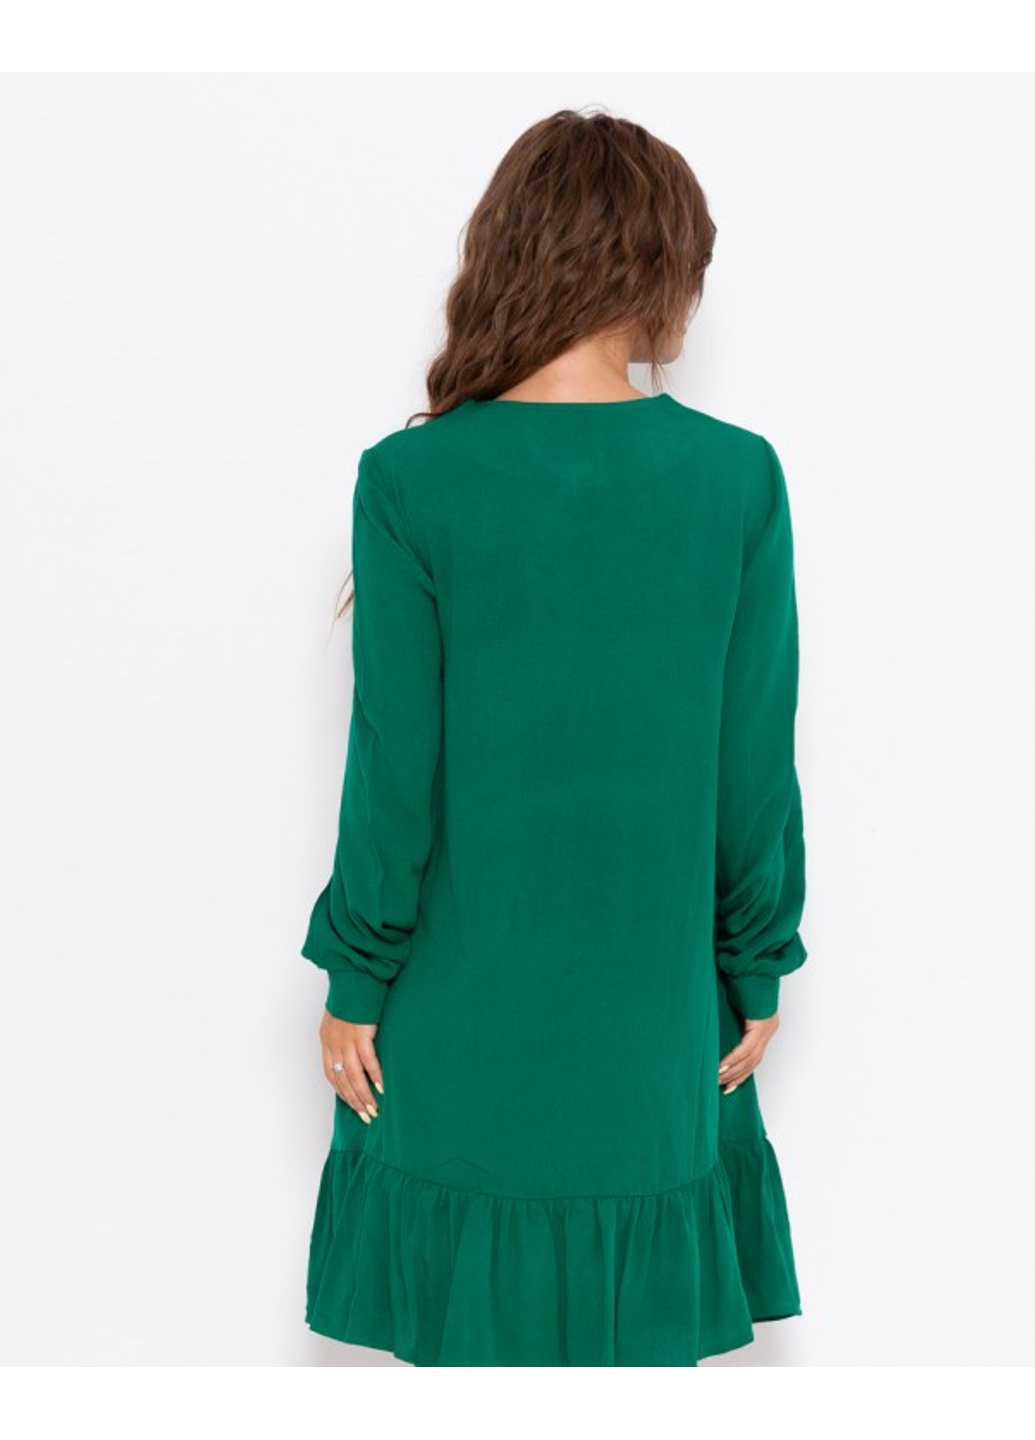 Зеленое вечернее платье 10503 l зеленый ISSA PLUS однотонное